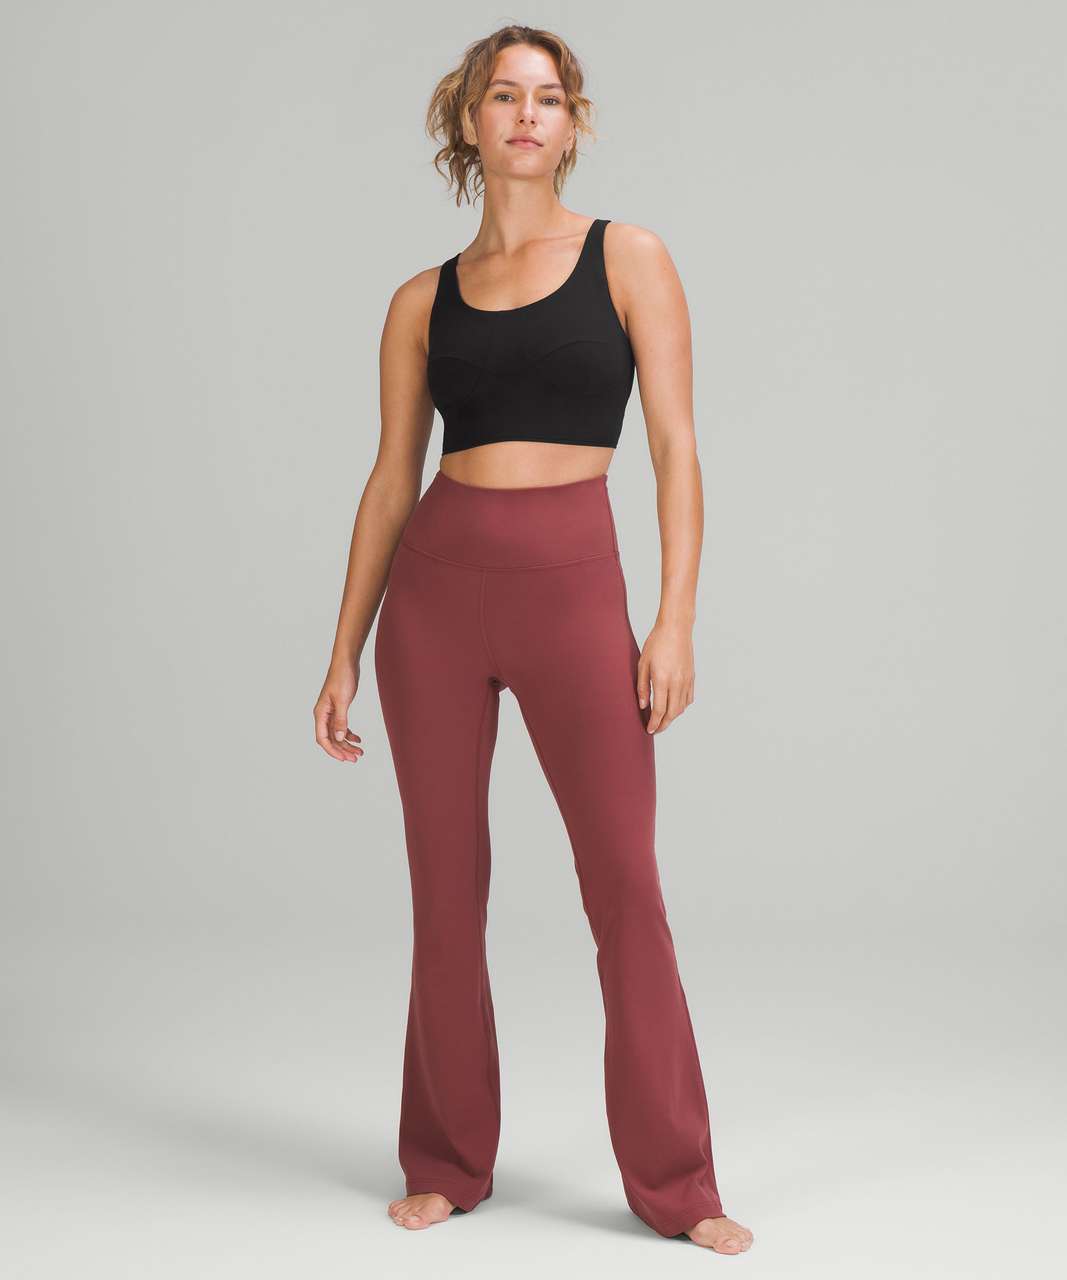 FrictionGrip™ Yoga Pant – Uplevel Athletics